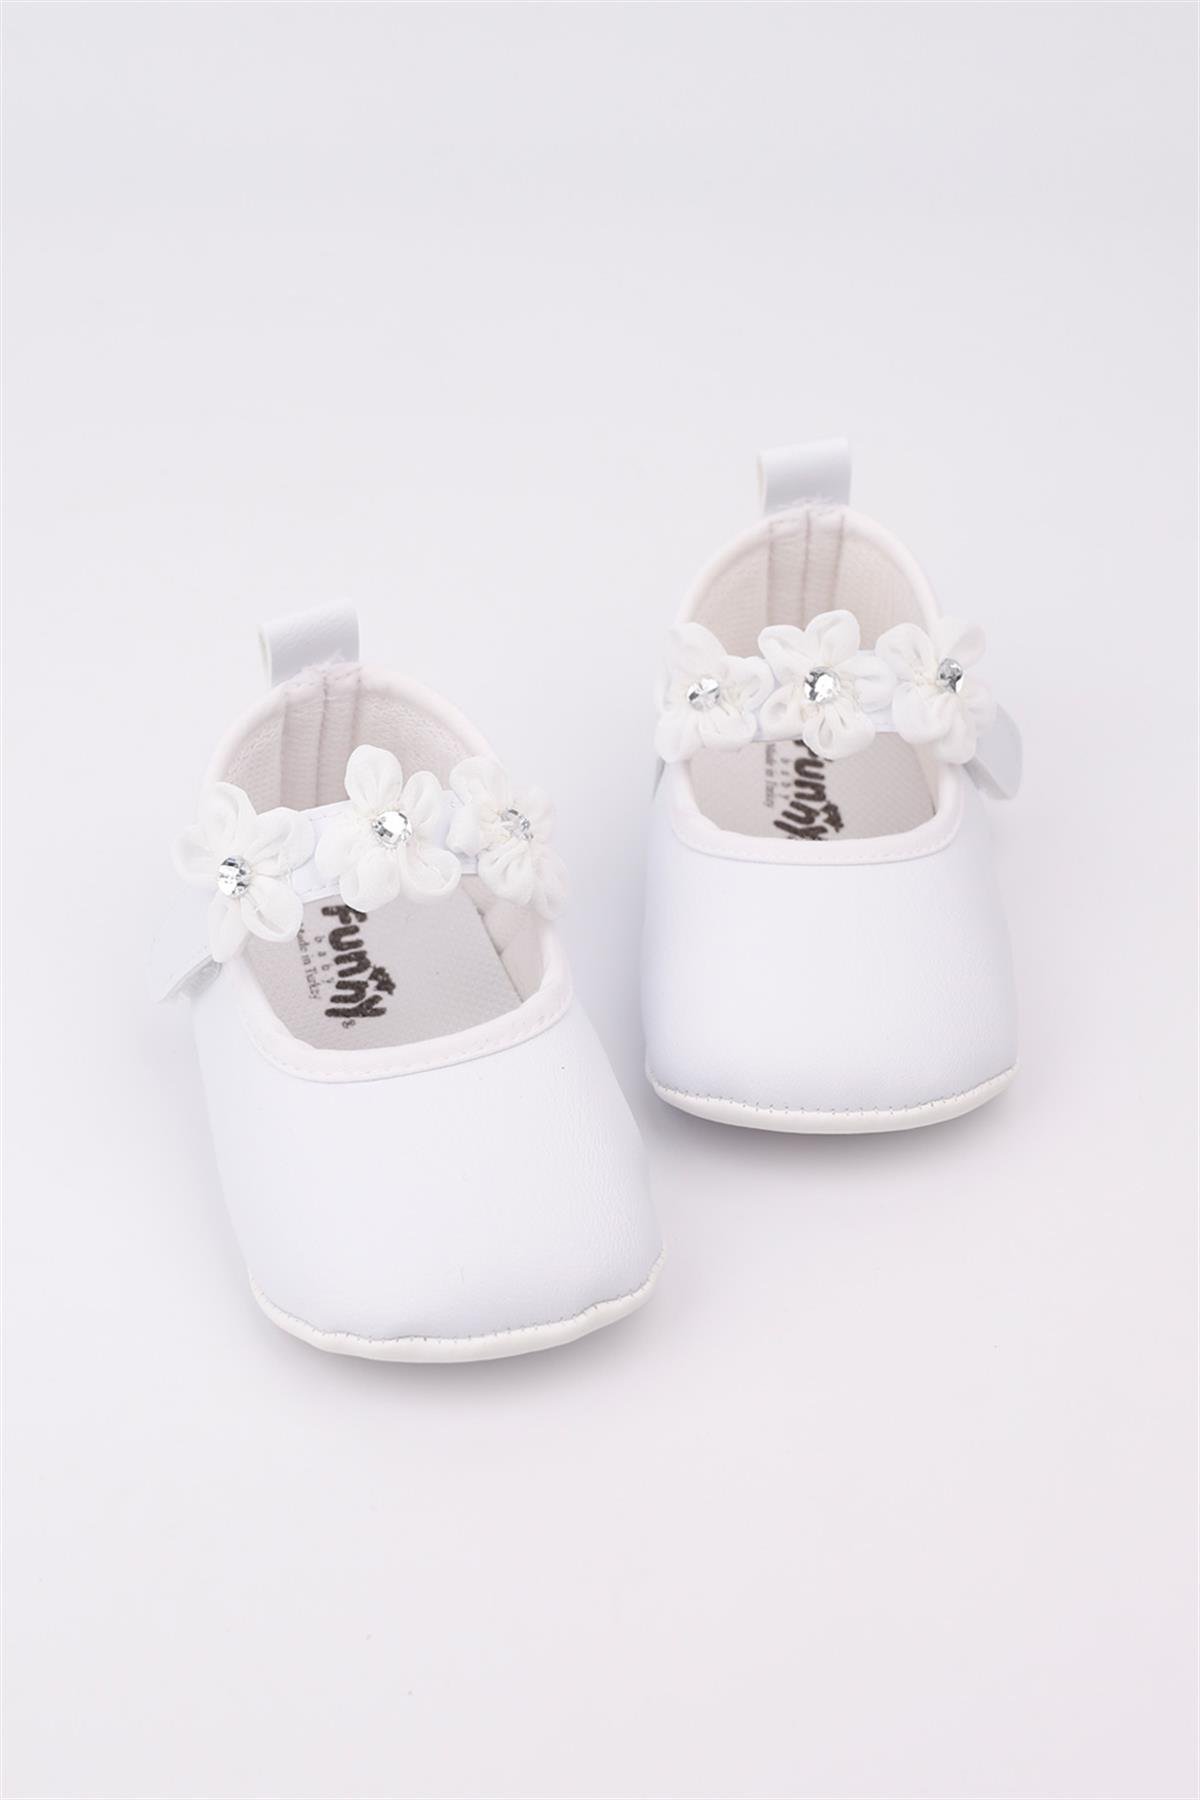 Beyaz Çiçekli Taşlı Kız Bebek AyakkabıLM1203 | Le Mabelle